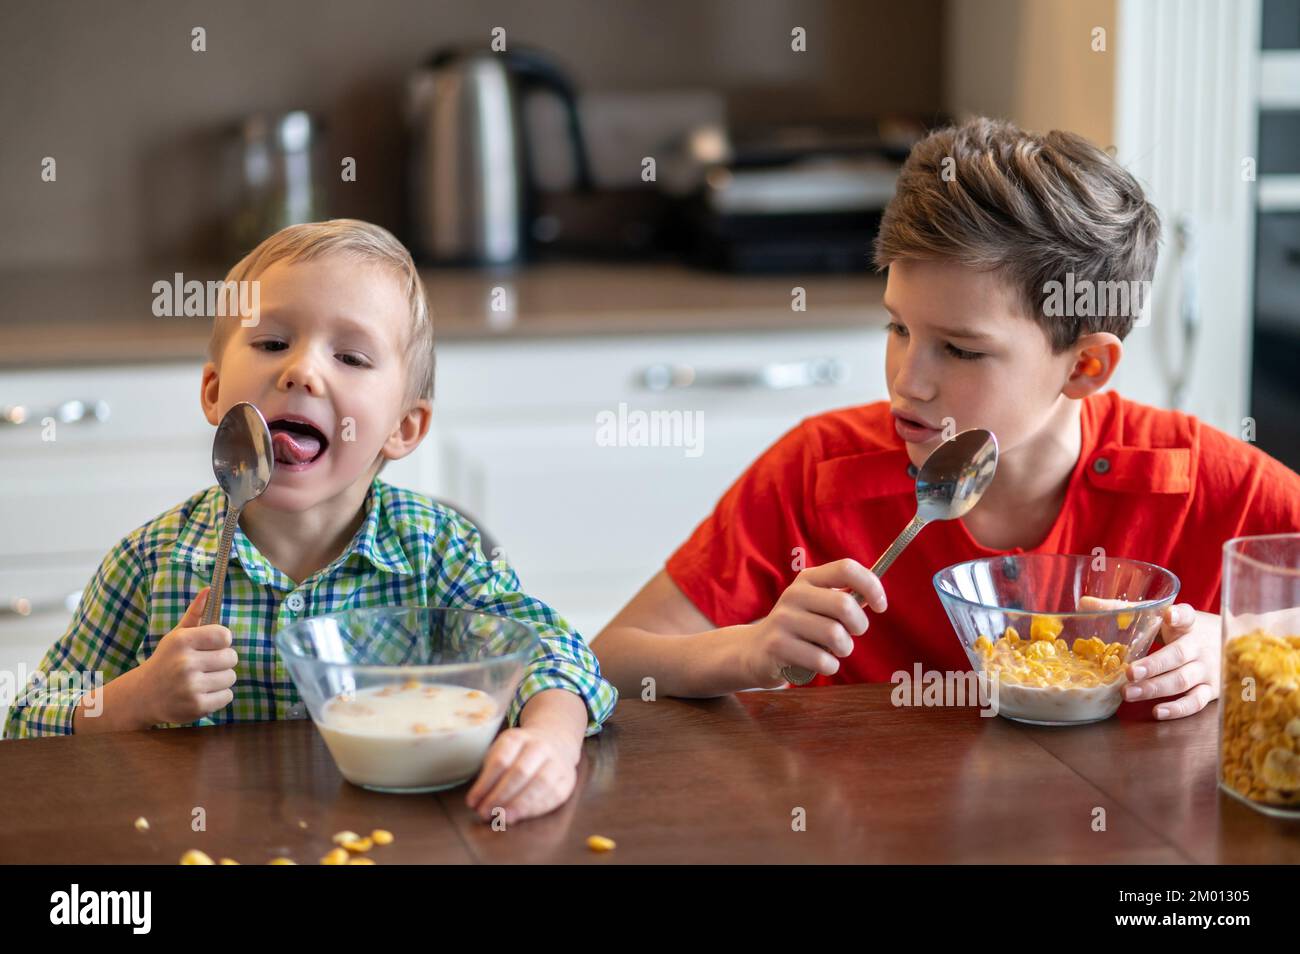 Älteres Geschwister sitzt am Küchentisch und starrt seinen jüngeren Bruder an, der den Löffel leckt. Stockfoto